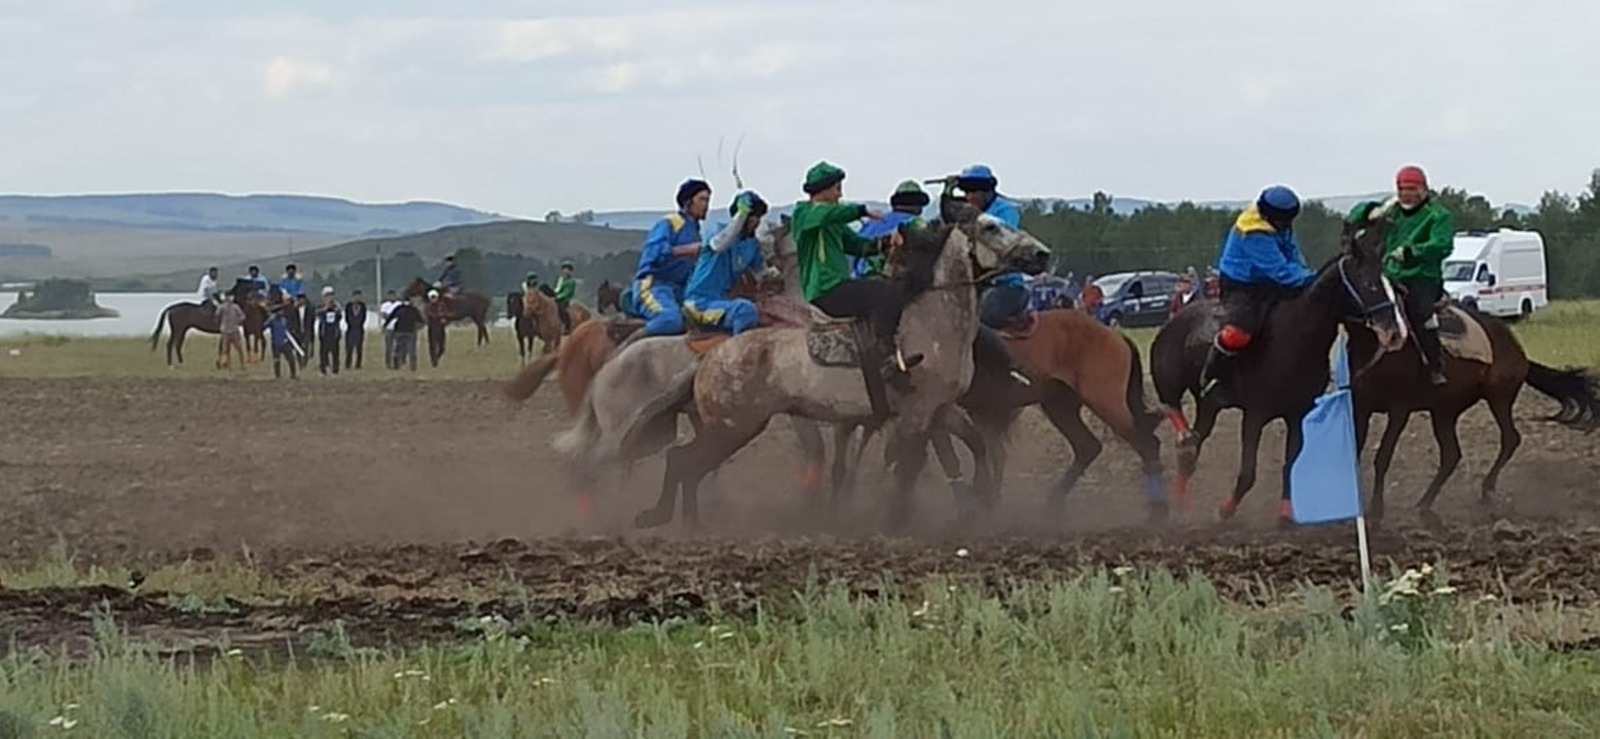 В рамках фестиваля башкирской лошади проходят конные скачки